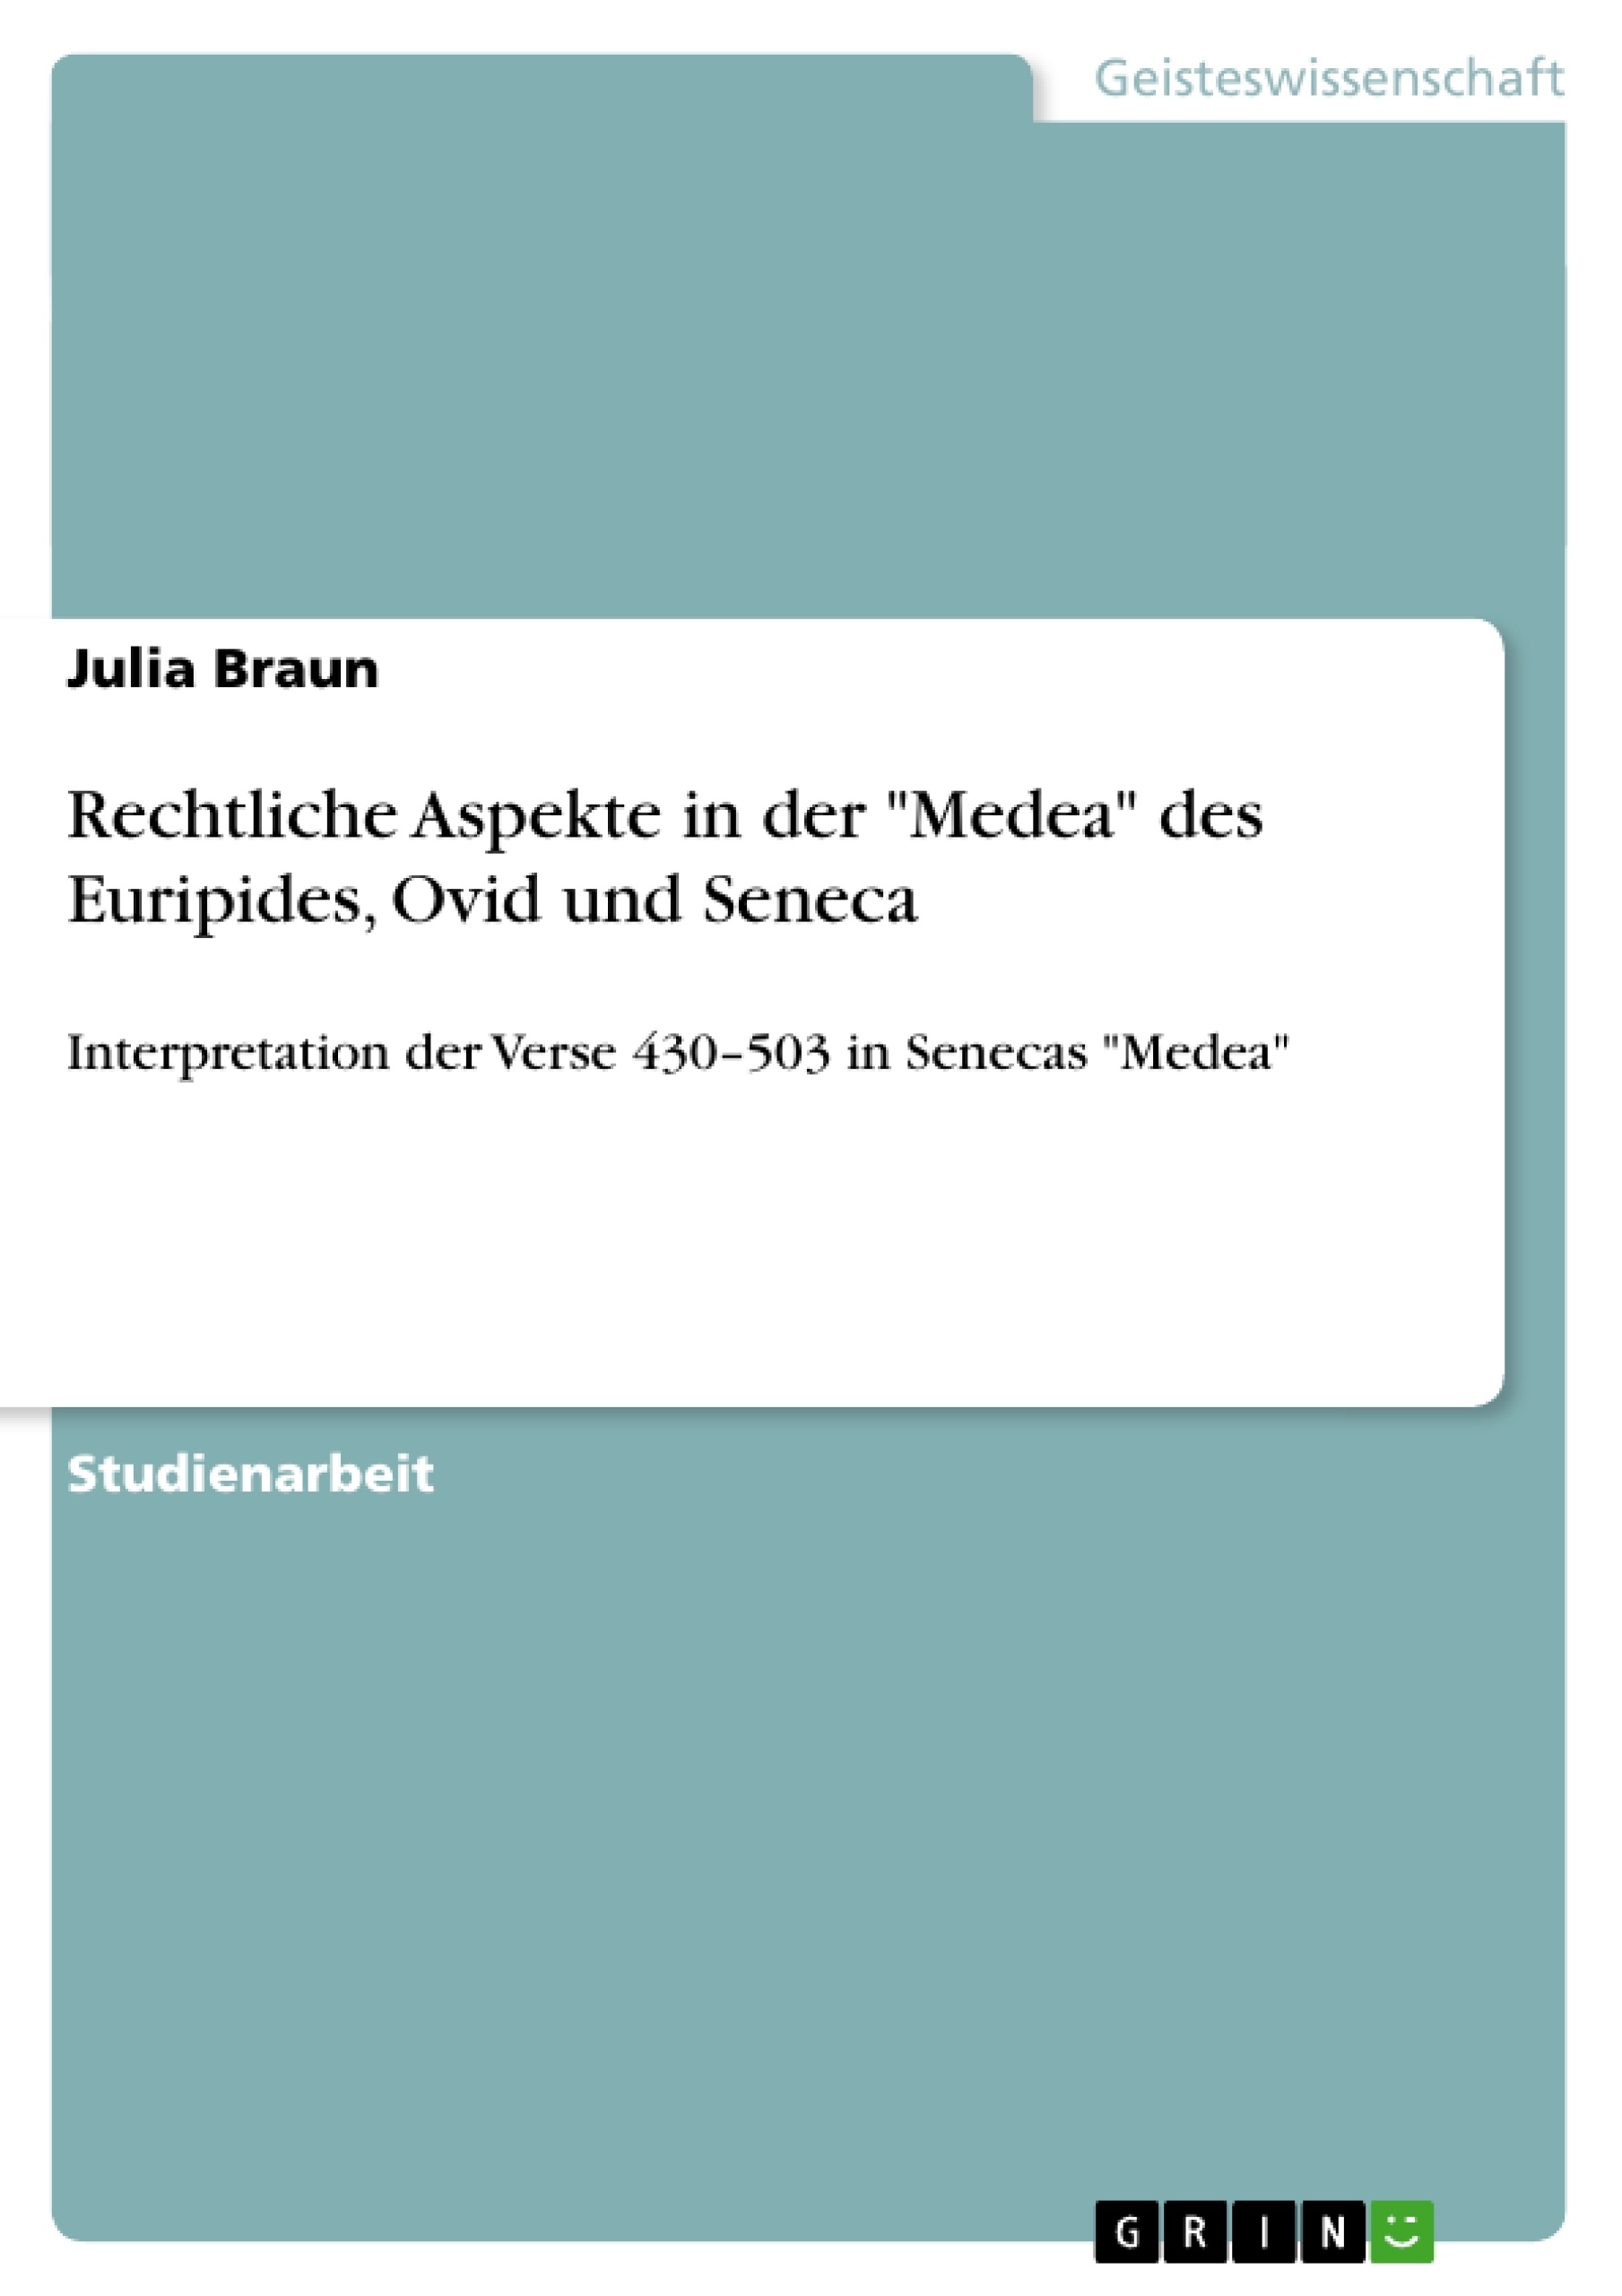 Titre: Rechtliche Aspekte in der "Medea" des Euripides, Ovid und Seneca